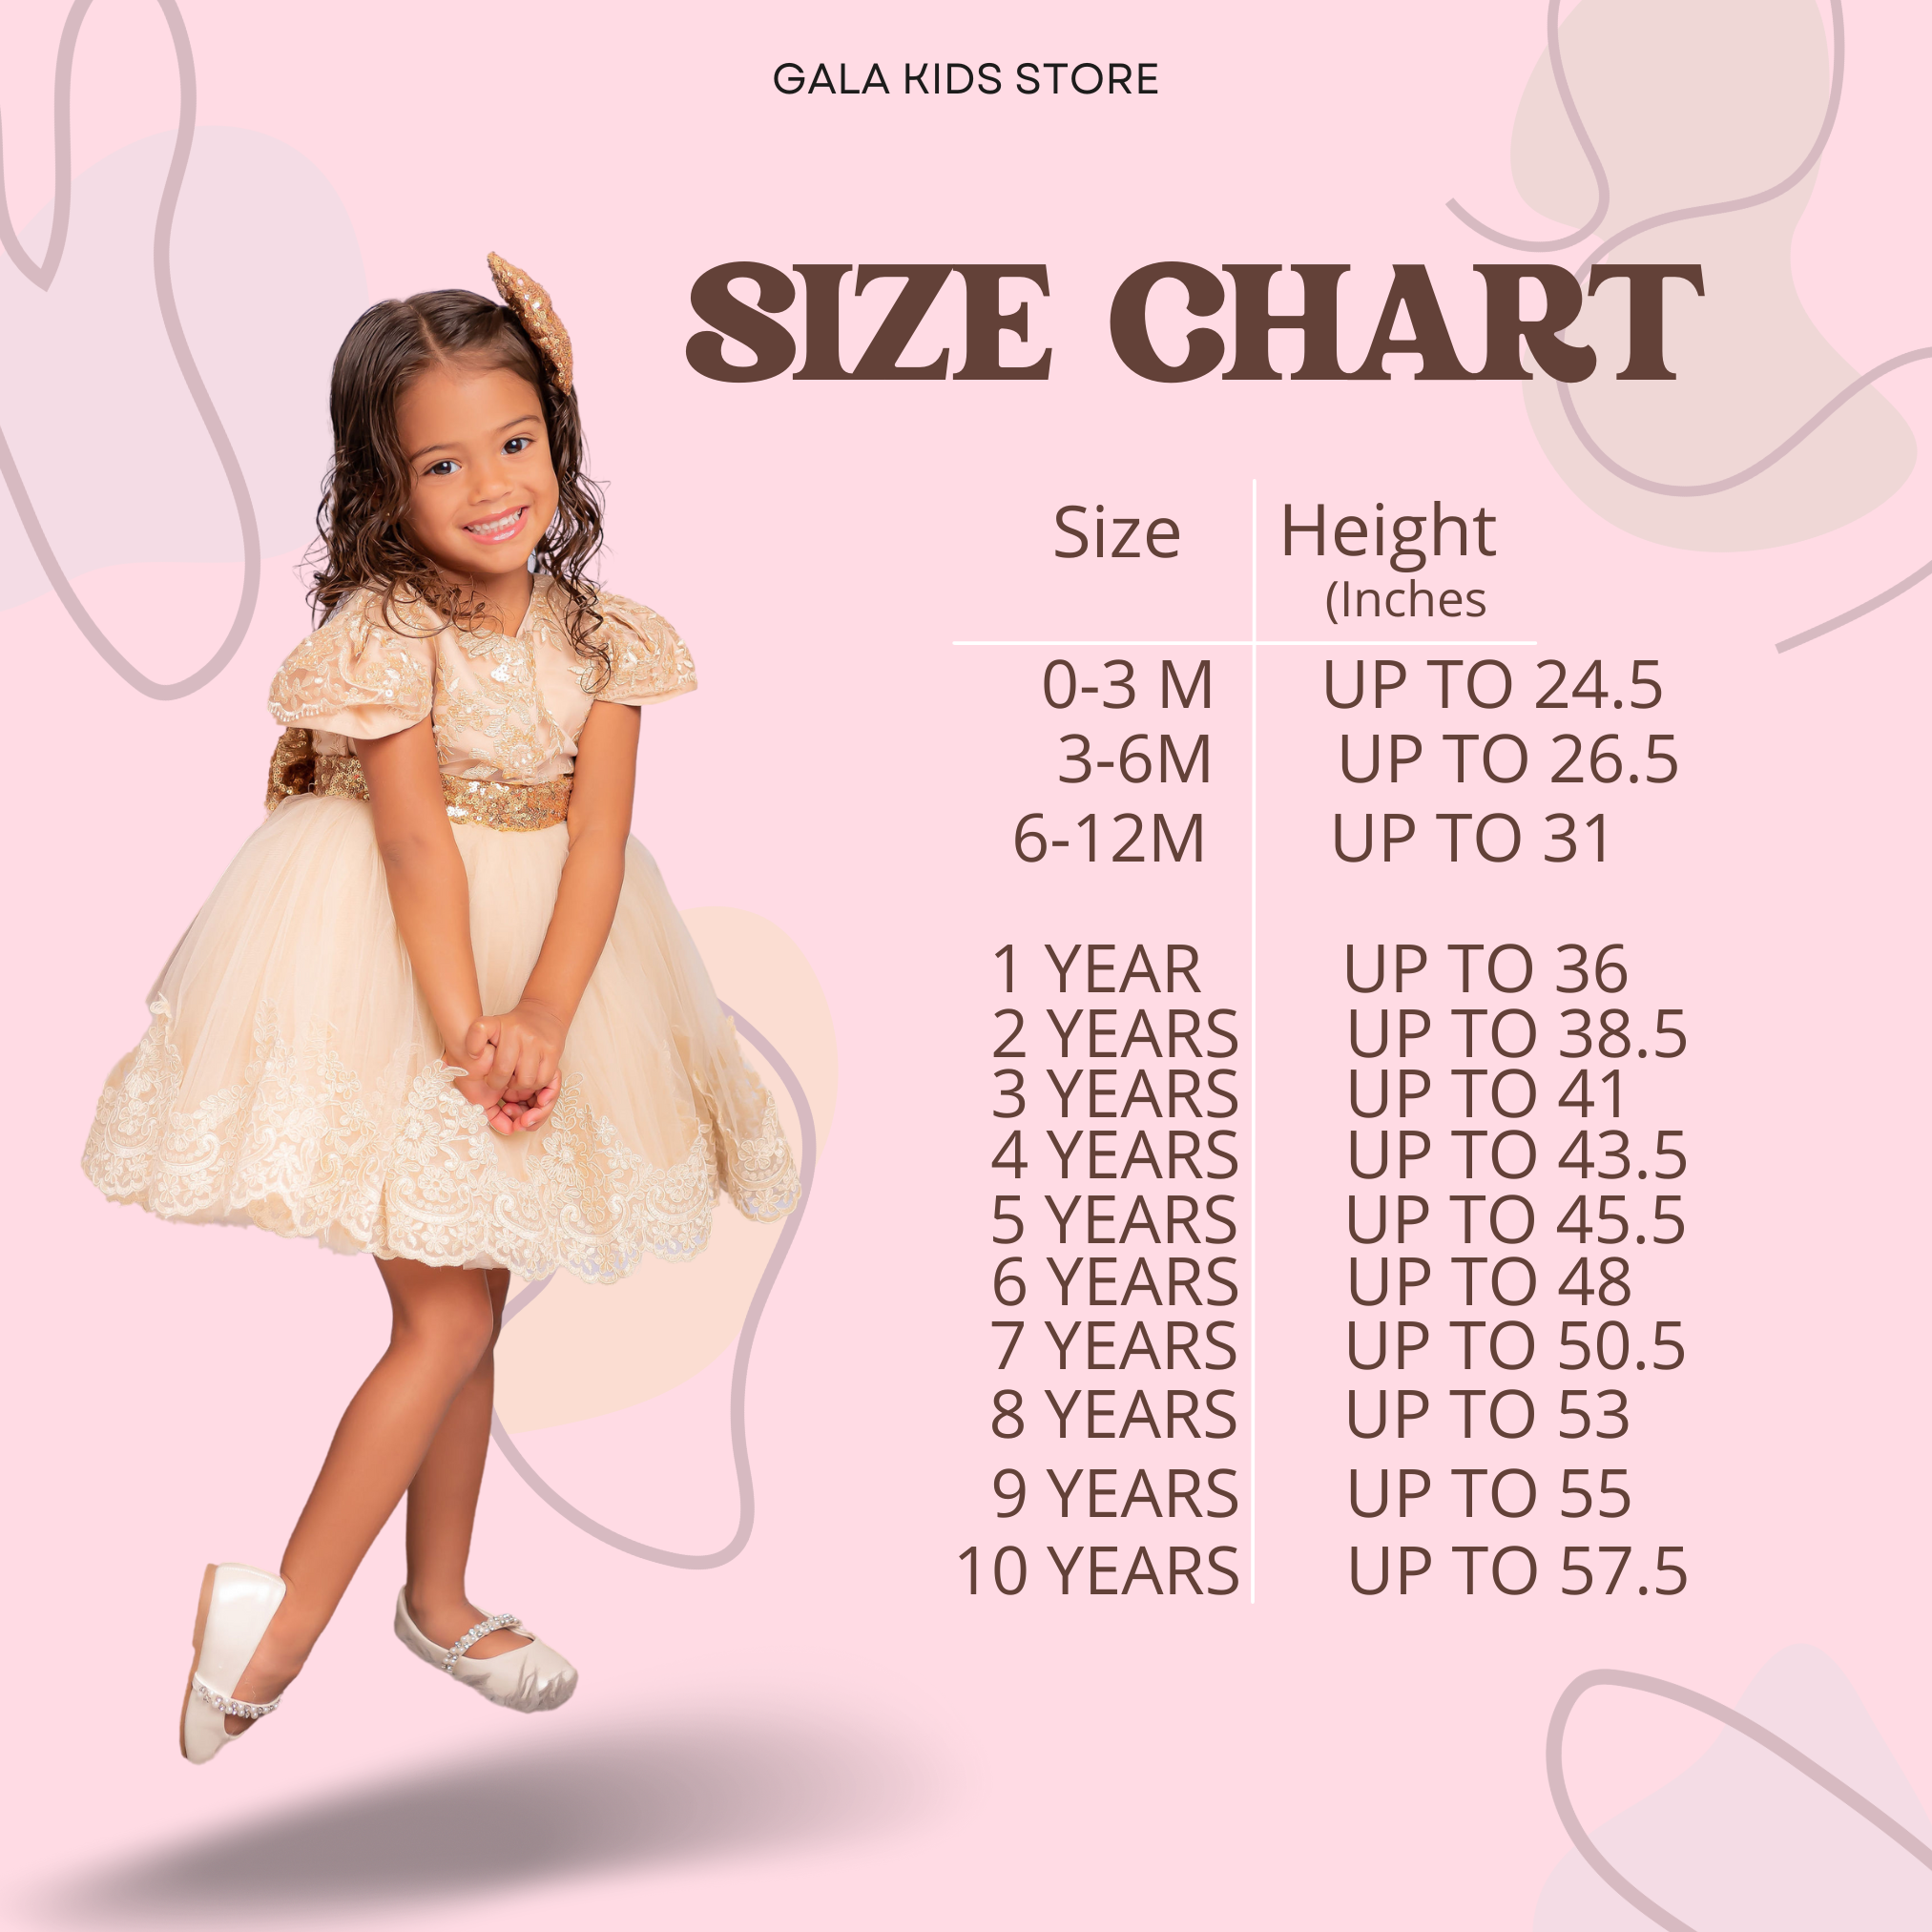 Size chart – Gala Kids Store